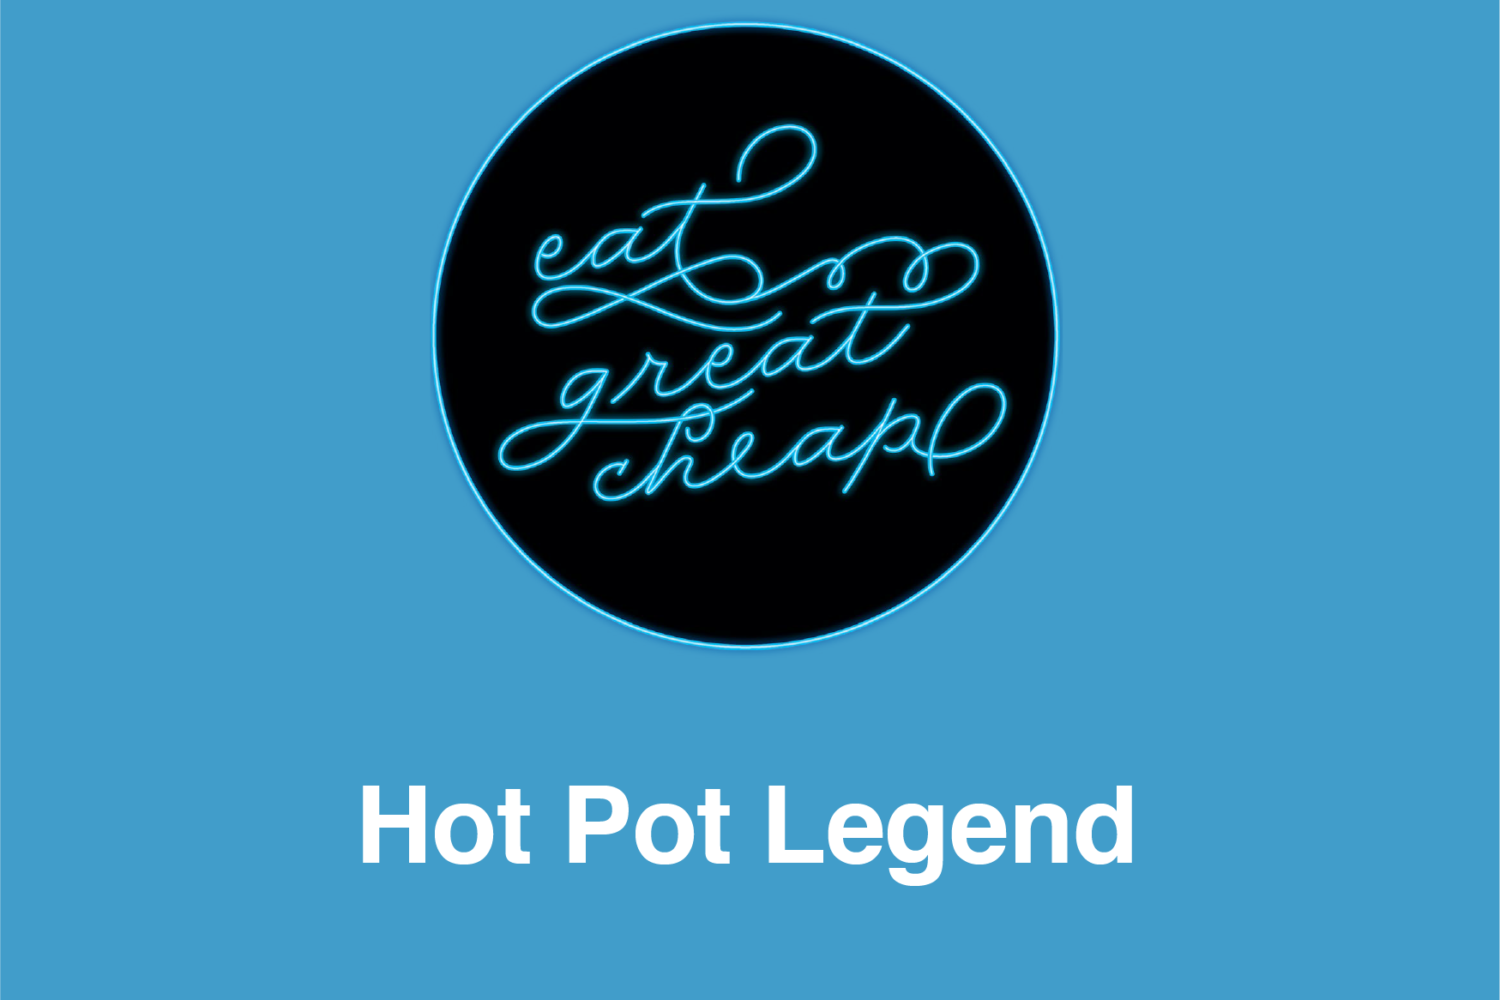 Cheap Eats 2019: Hot Pot Legend